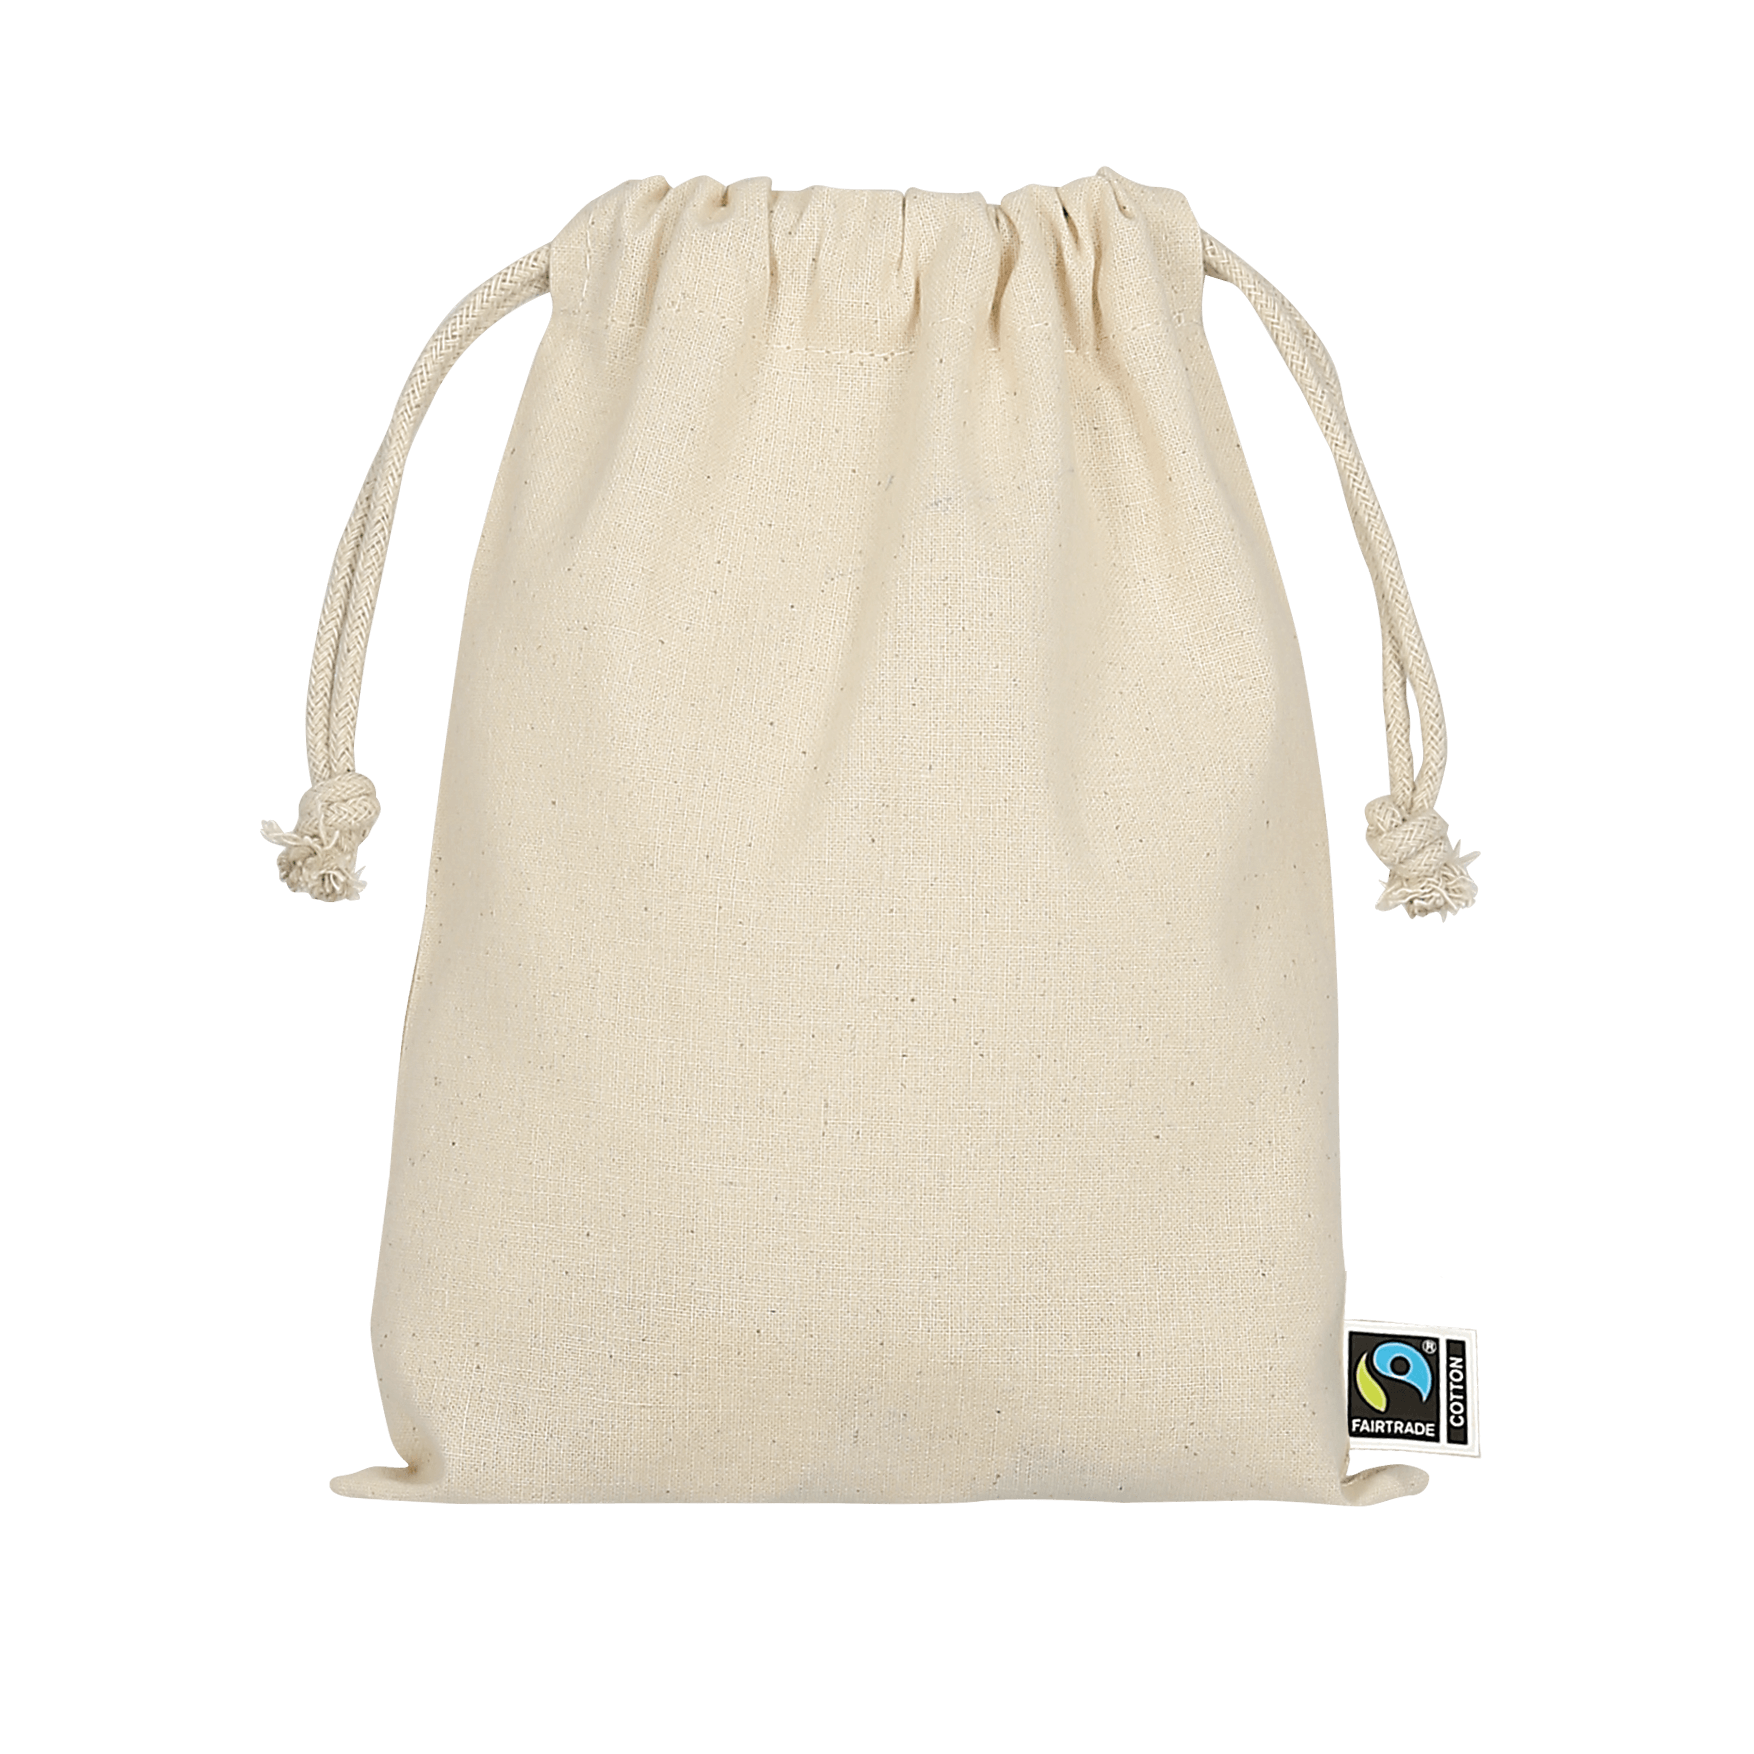 TEXXILLA Zuziehbeutel aus Fairtrade-zertifizierter Baumwolle, 15 x 20 cm